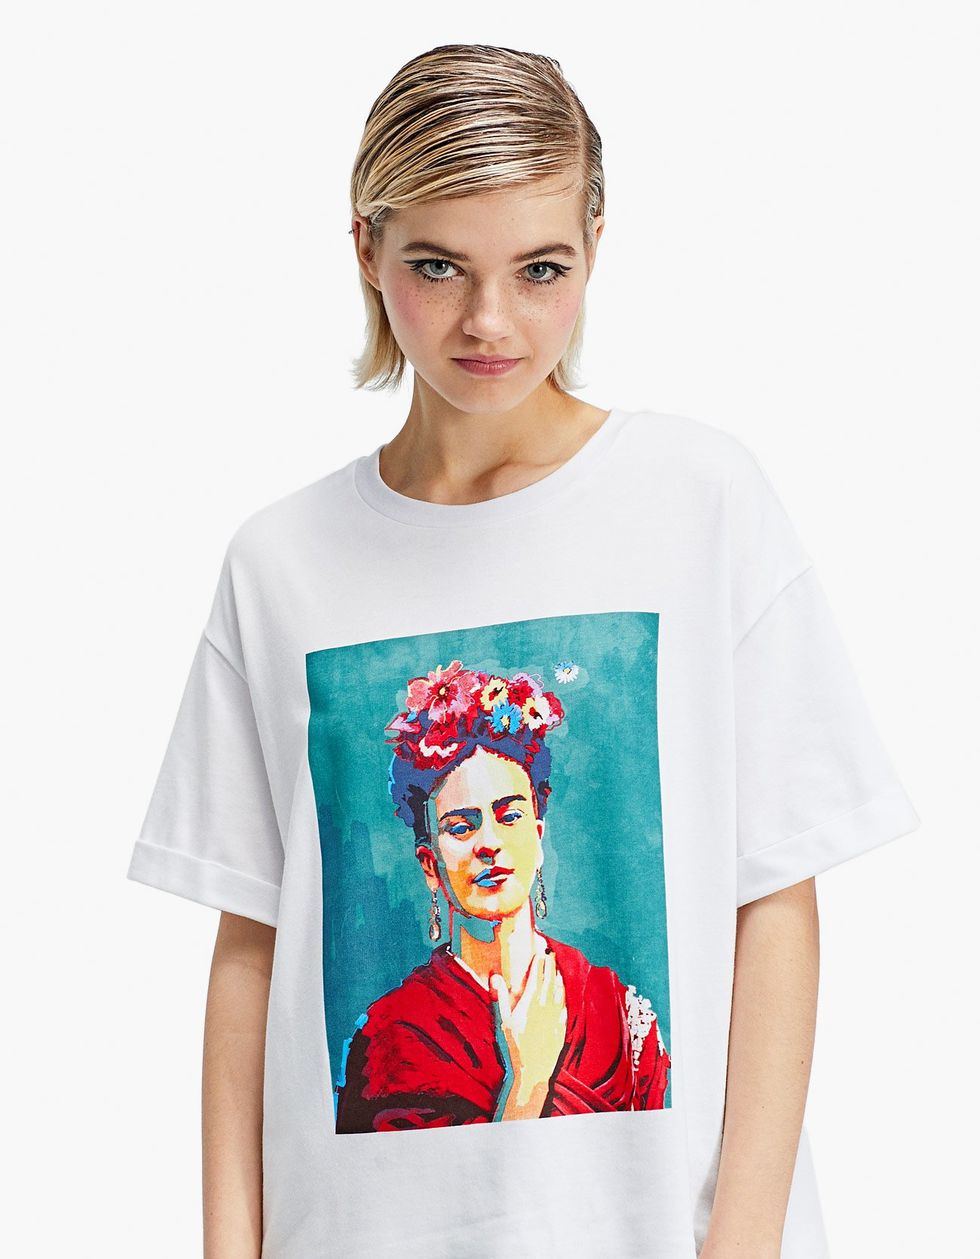 La fridamanía vuelve la - Stradivarius tiene las camisetas Frida Kahlo más totales